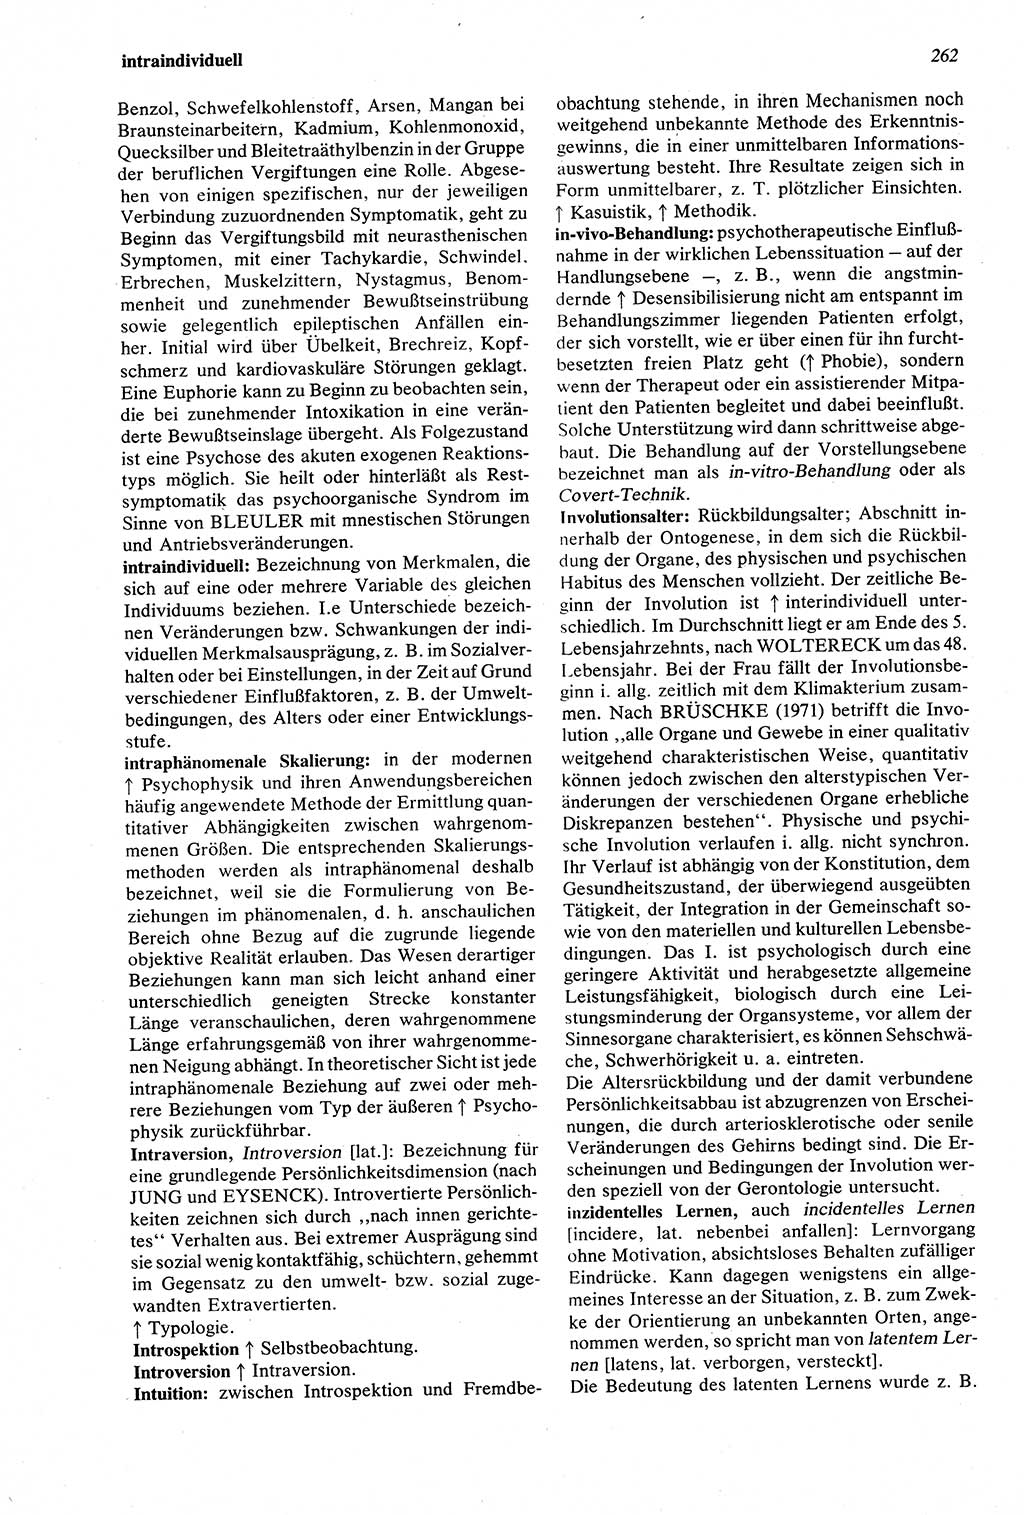 Wörterbuch der Psychologie [Deutsche Demokratische Republik (DDR)] 1976, Seite 262 (Wb. Psych. DDR 1976, S. 262)